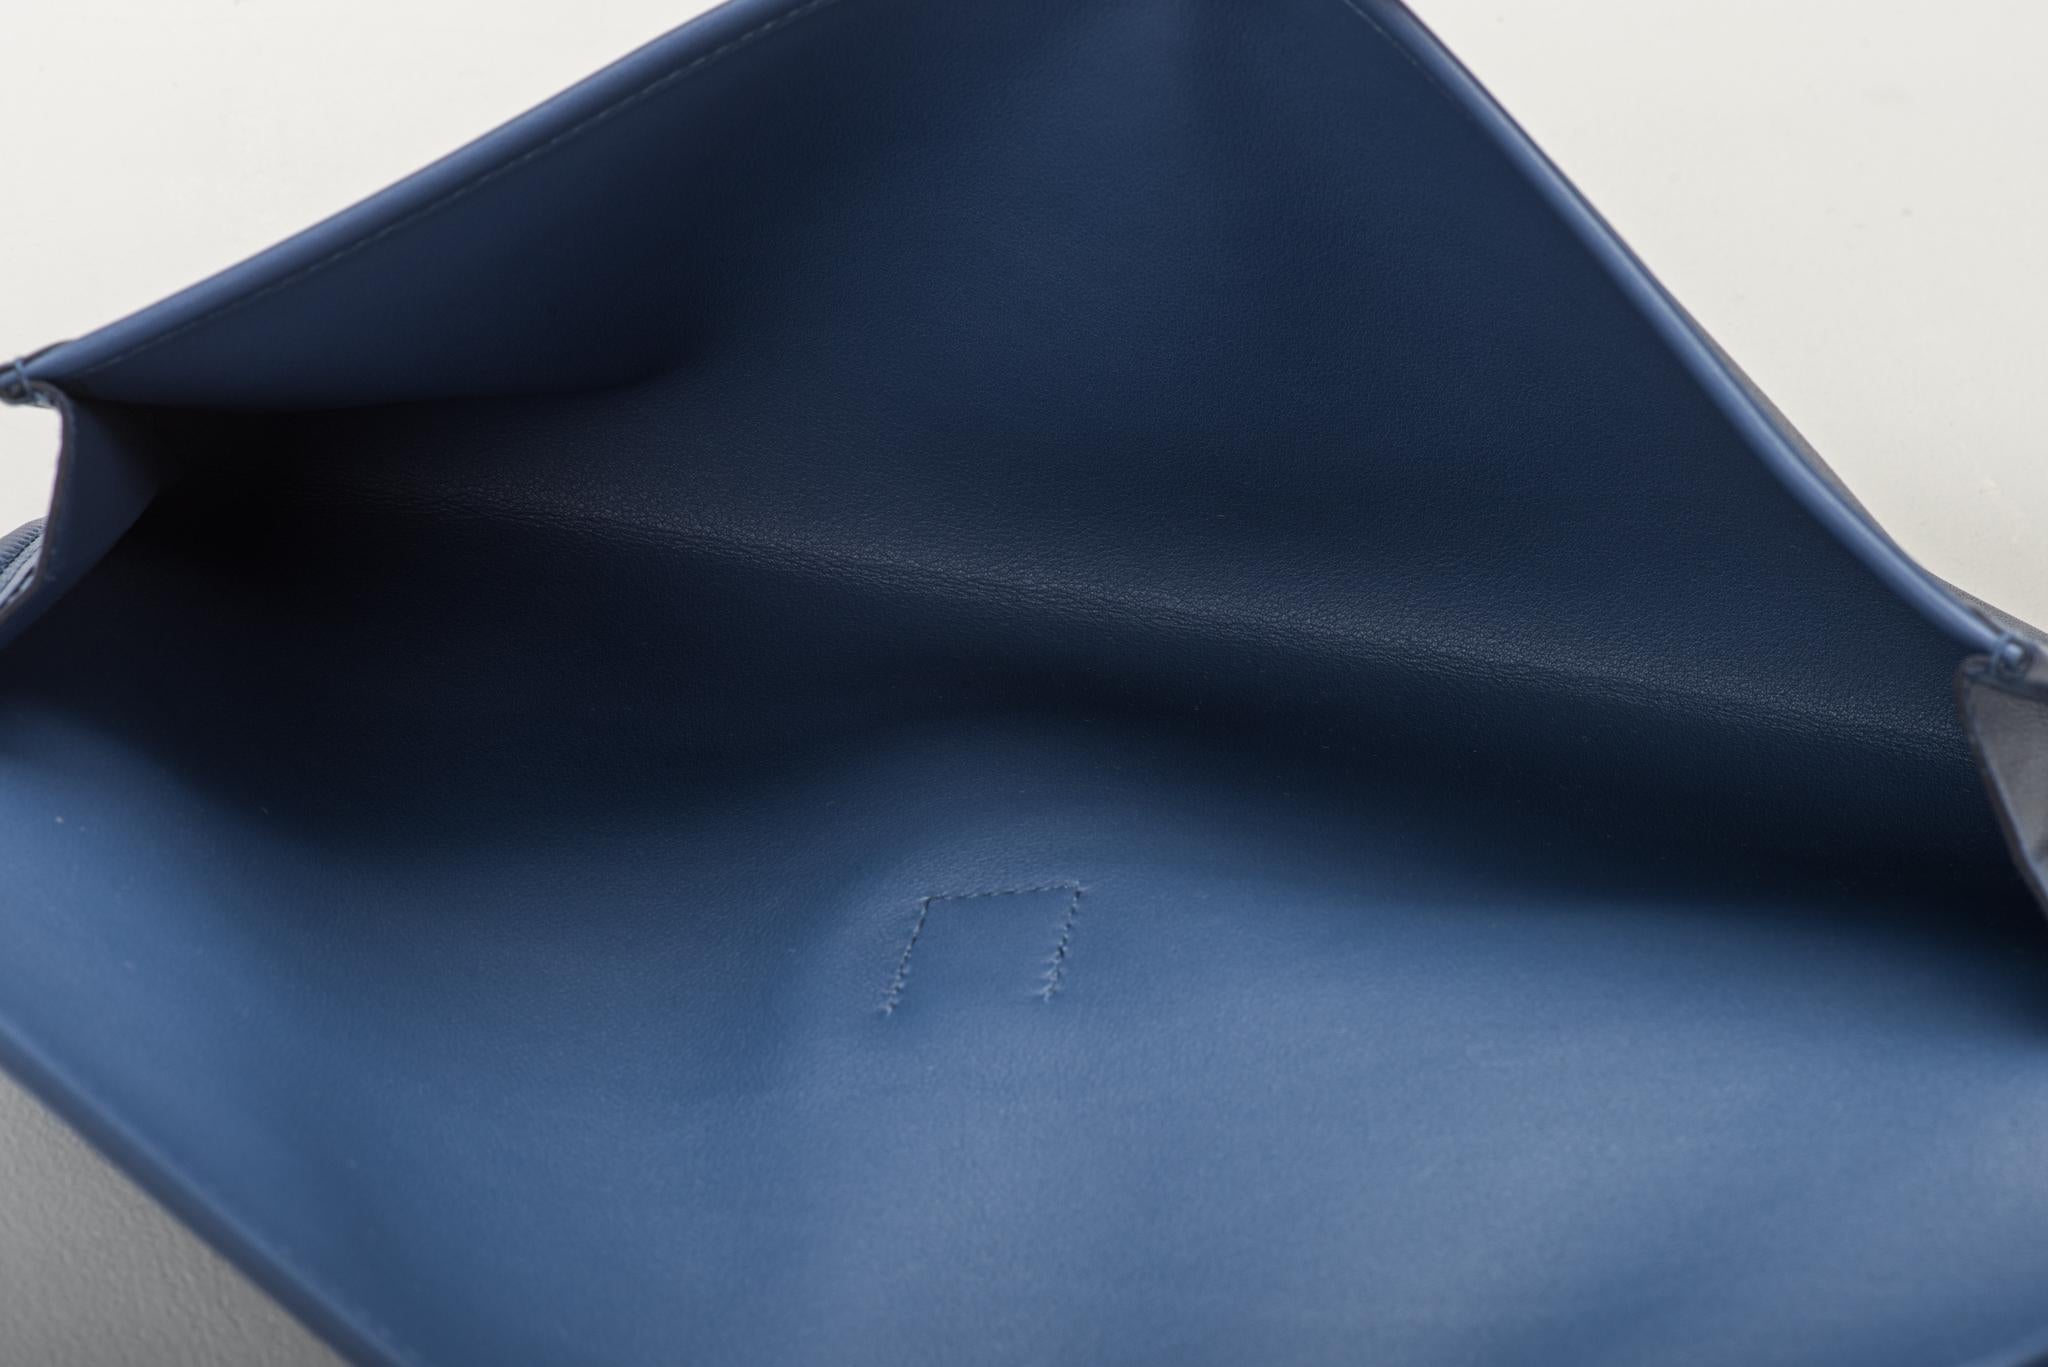 Hermès jig elan 29cm blau brighton in swift Leder. Datiert 